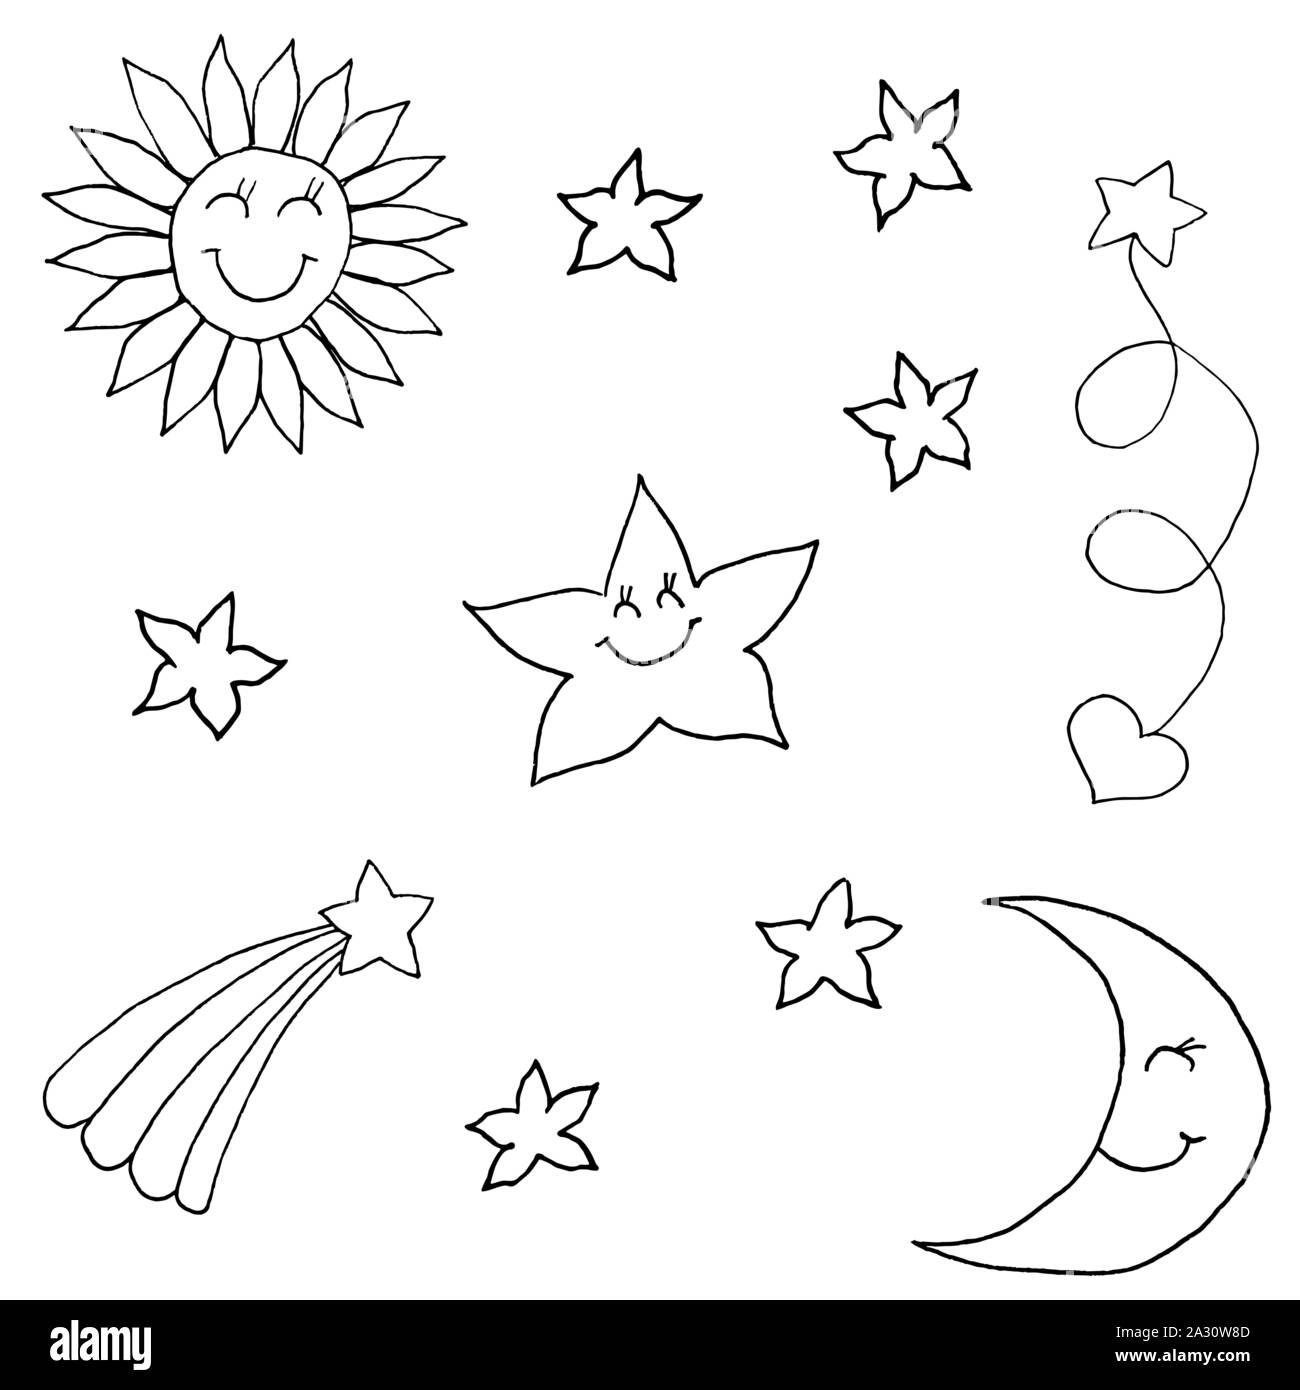 Satz von sechs kleine Sterne, große Sterne, Sonne, Mond, Rising Star und Star mit Herz. Monochrome doodle Skizze, Zeichnung. Schwarzer Umriss auf weißem Hintergrund. Vector Illustration Stock Vektor